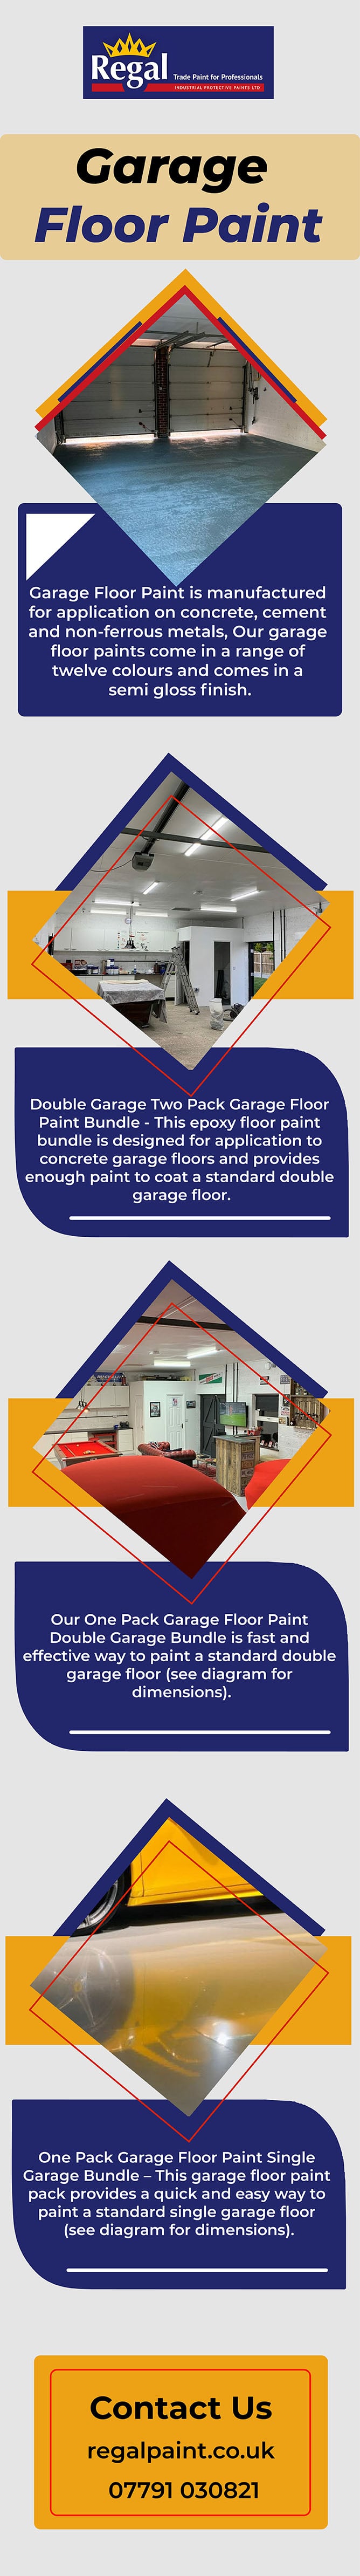 Garage Floor Paint – Buy The Best Quality Floor Paint